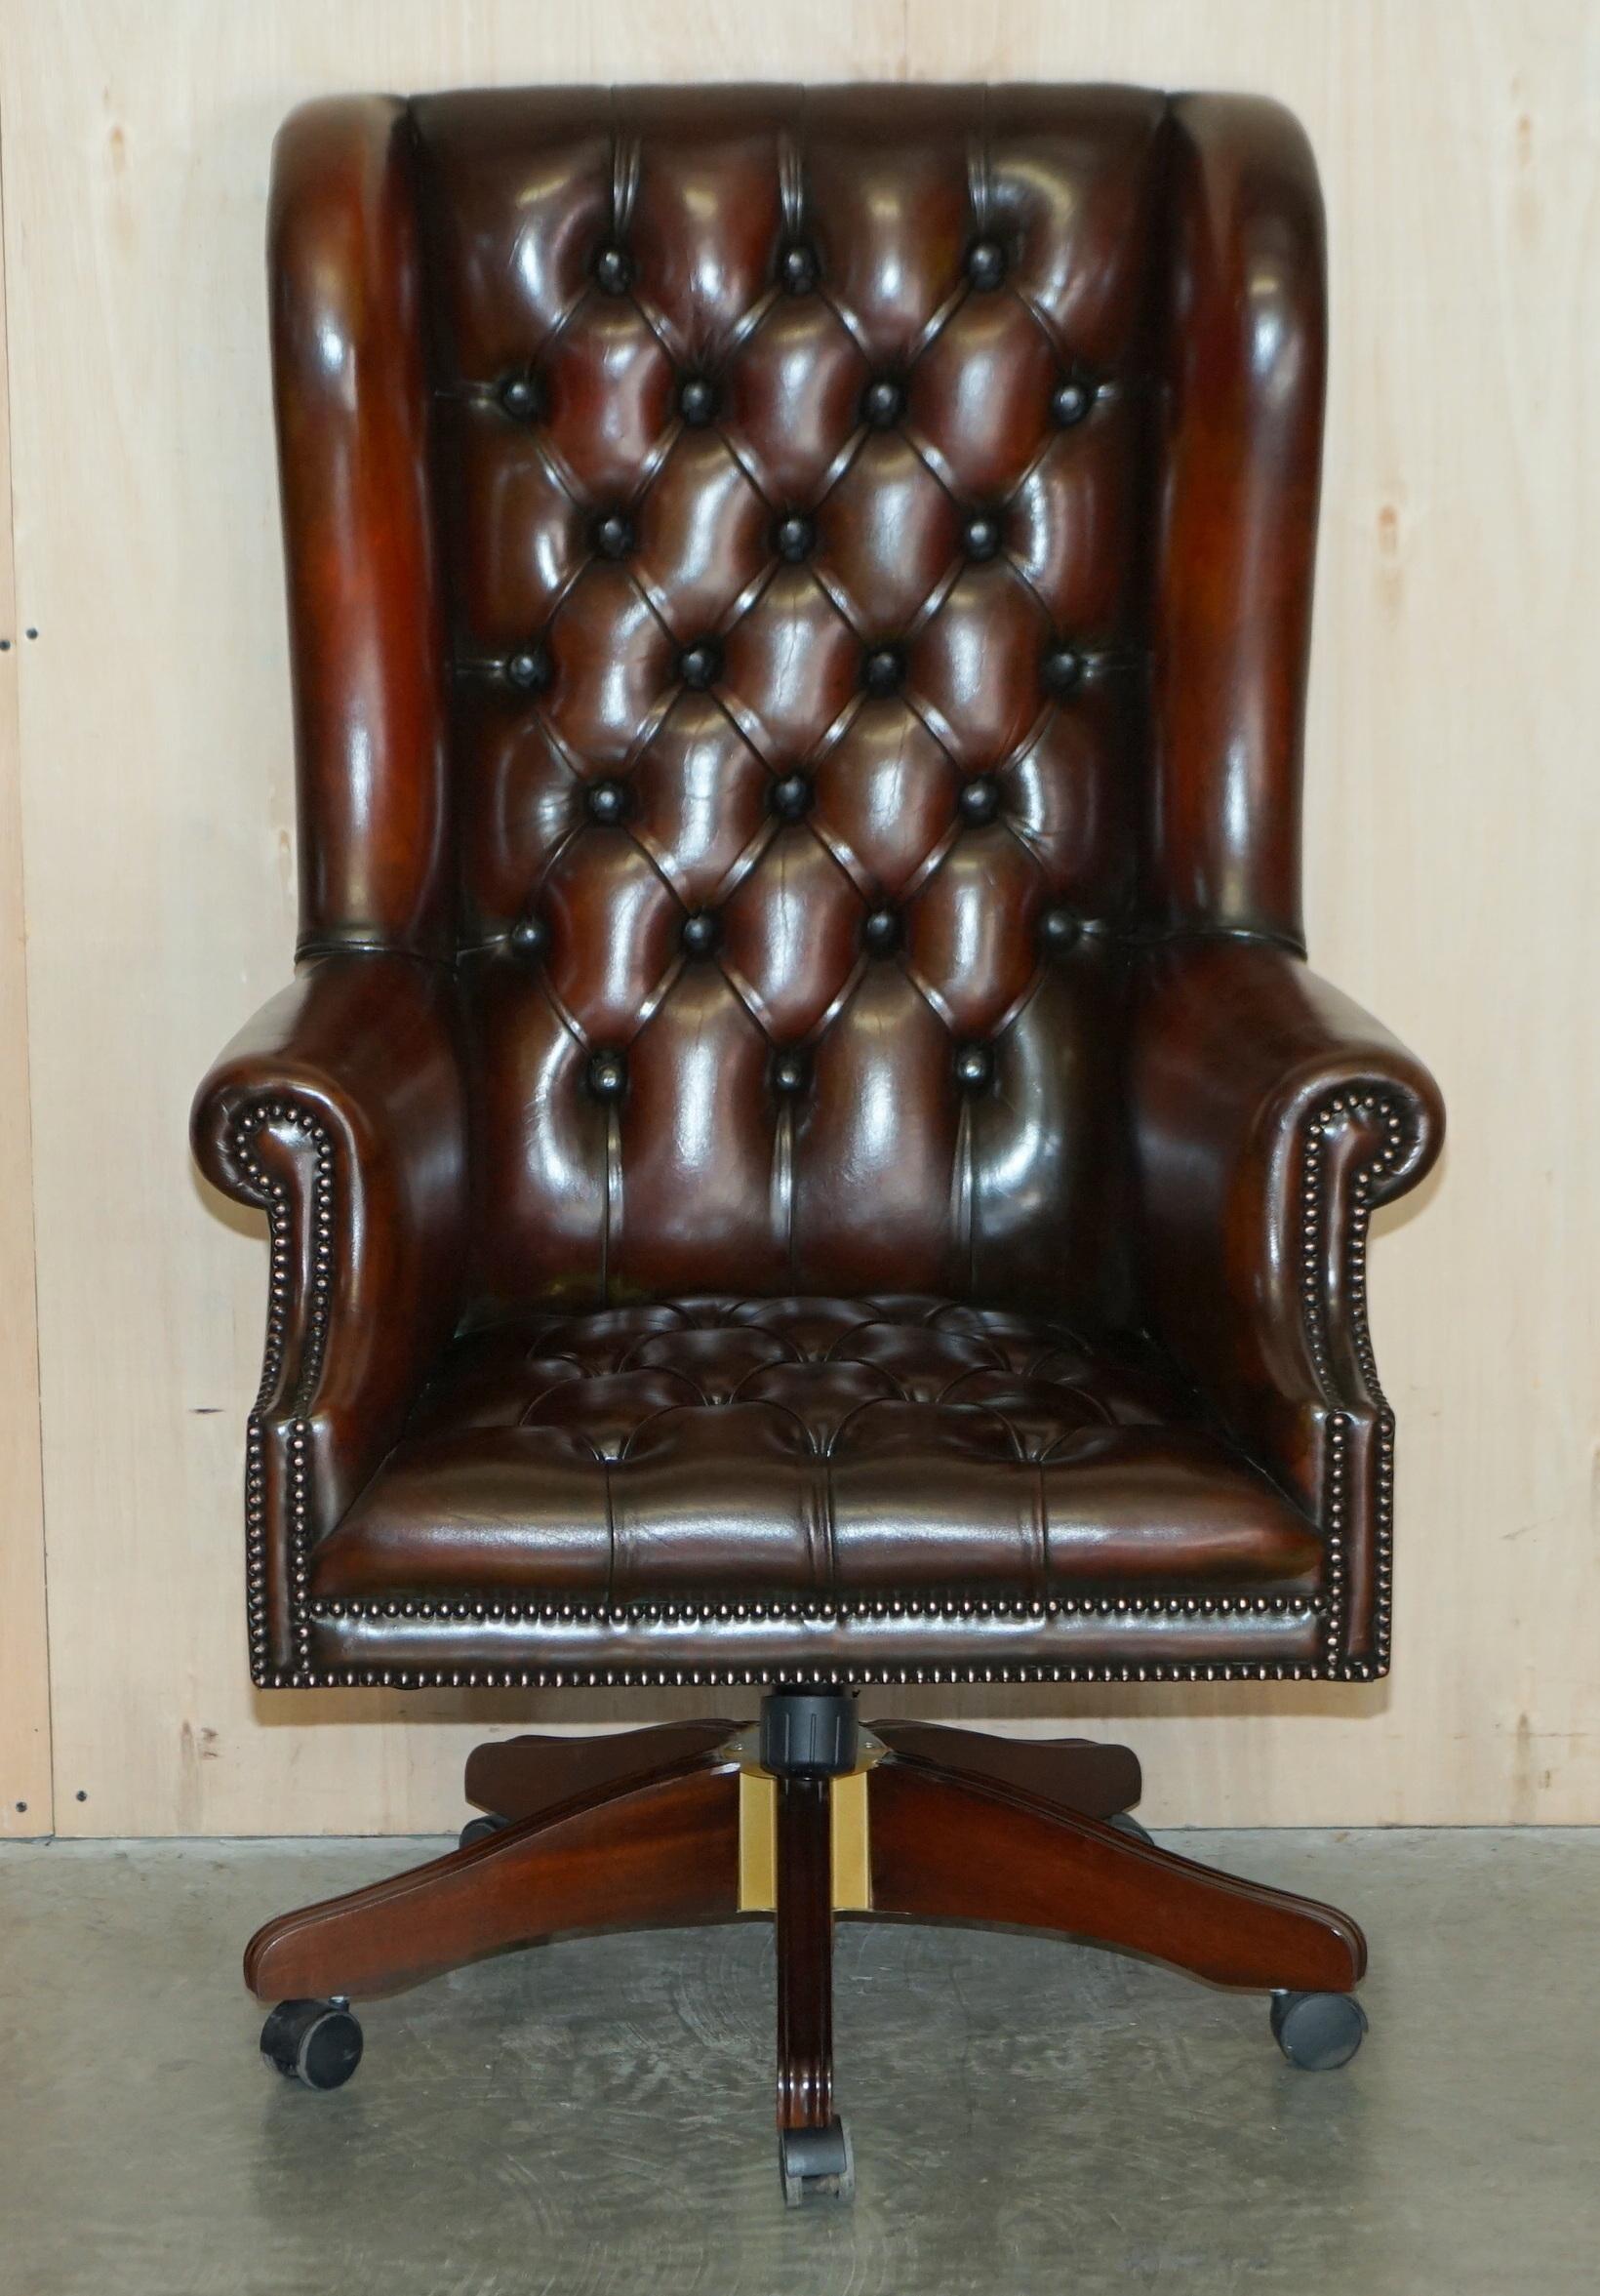 Nous sommes ravis d'offrir à la vente cette magnifique chaise de bureau Chesterfield Wingback restaurée en cuir brun cigare teint à la main, avec cuir et patine d'origine.

Il s'agit en effet d'un fauteuil de capitaine très confortable, comme votre